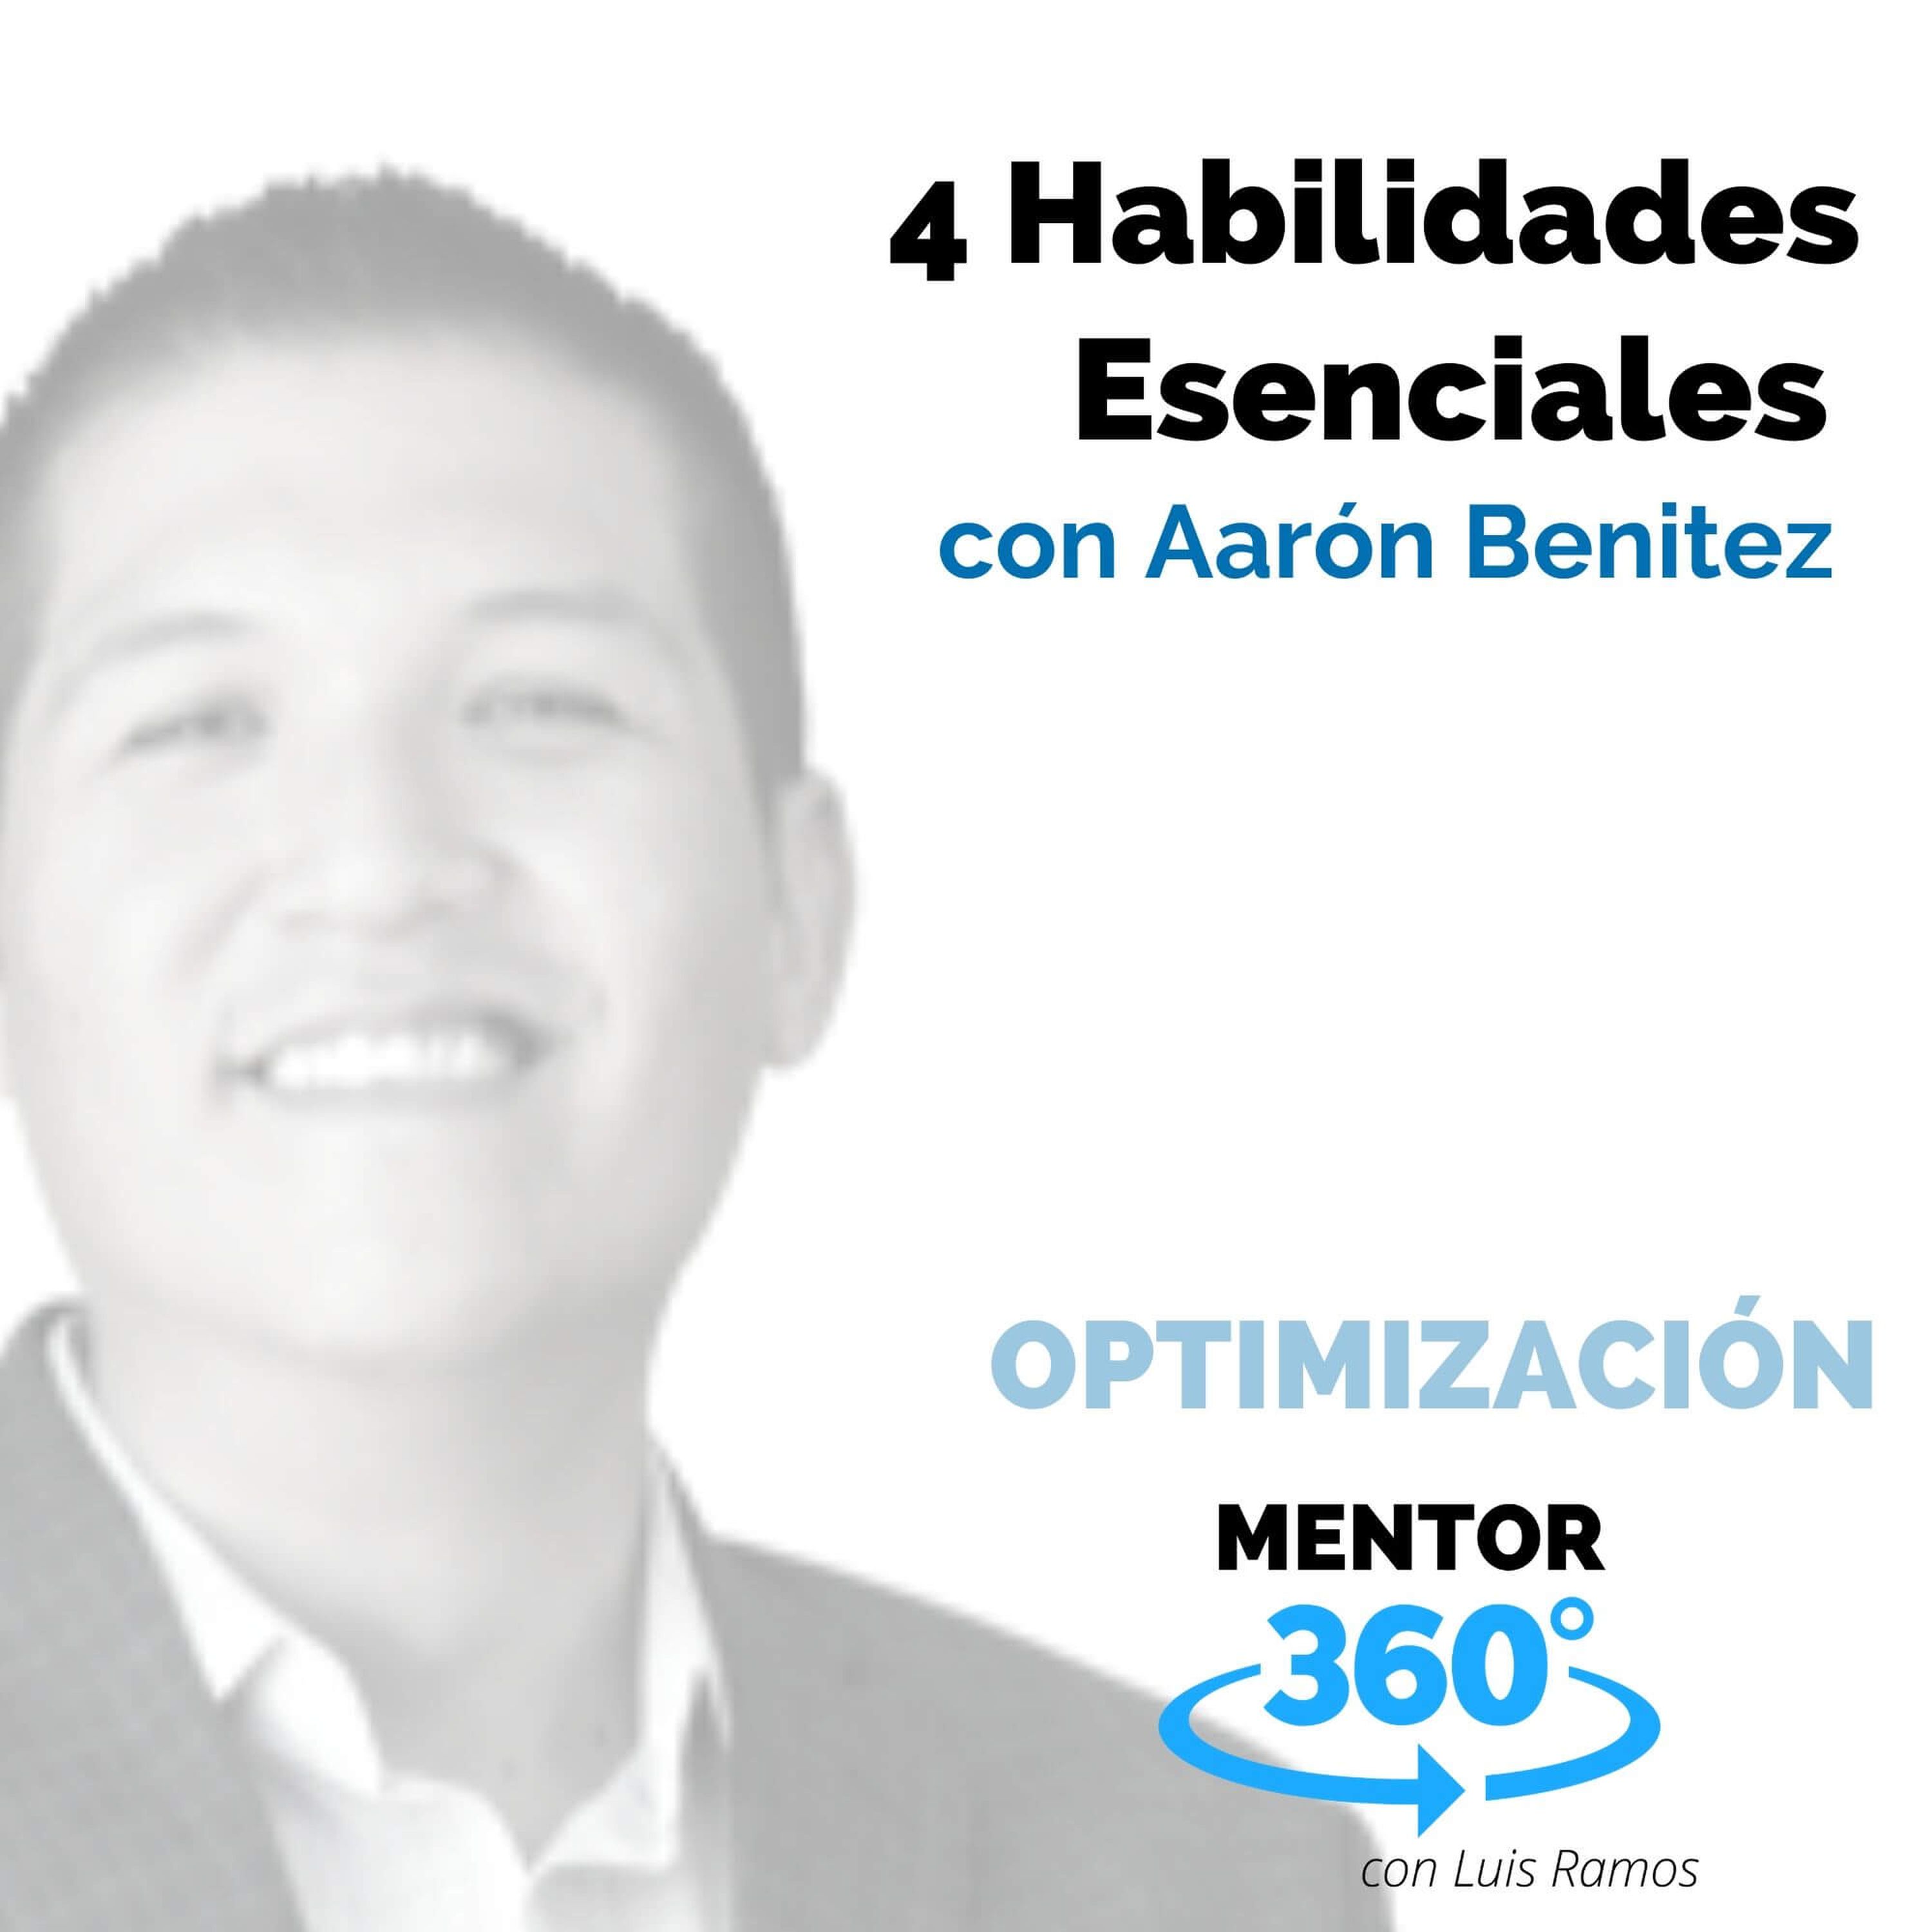 4 habilidades esenciales, con Aarón Benítez - OPTIMIZACIÓN - MENTOR360